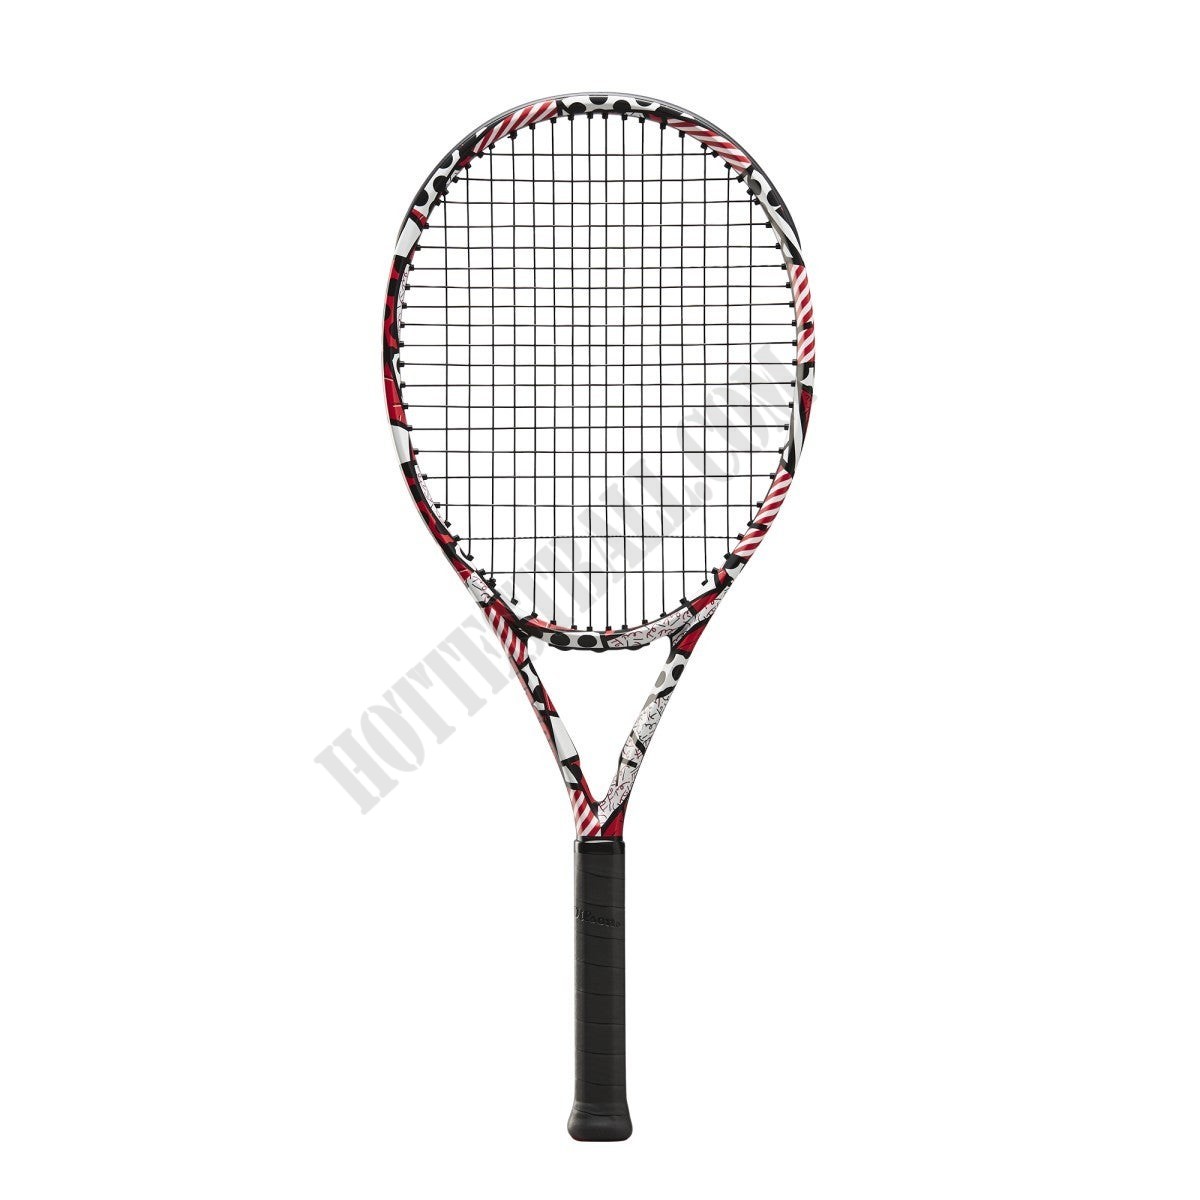 Britto Clash 26 Tennis Racket - Wilson Discount Store - Britto Clash 26 Tennis Racket - Wilson Discount Store